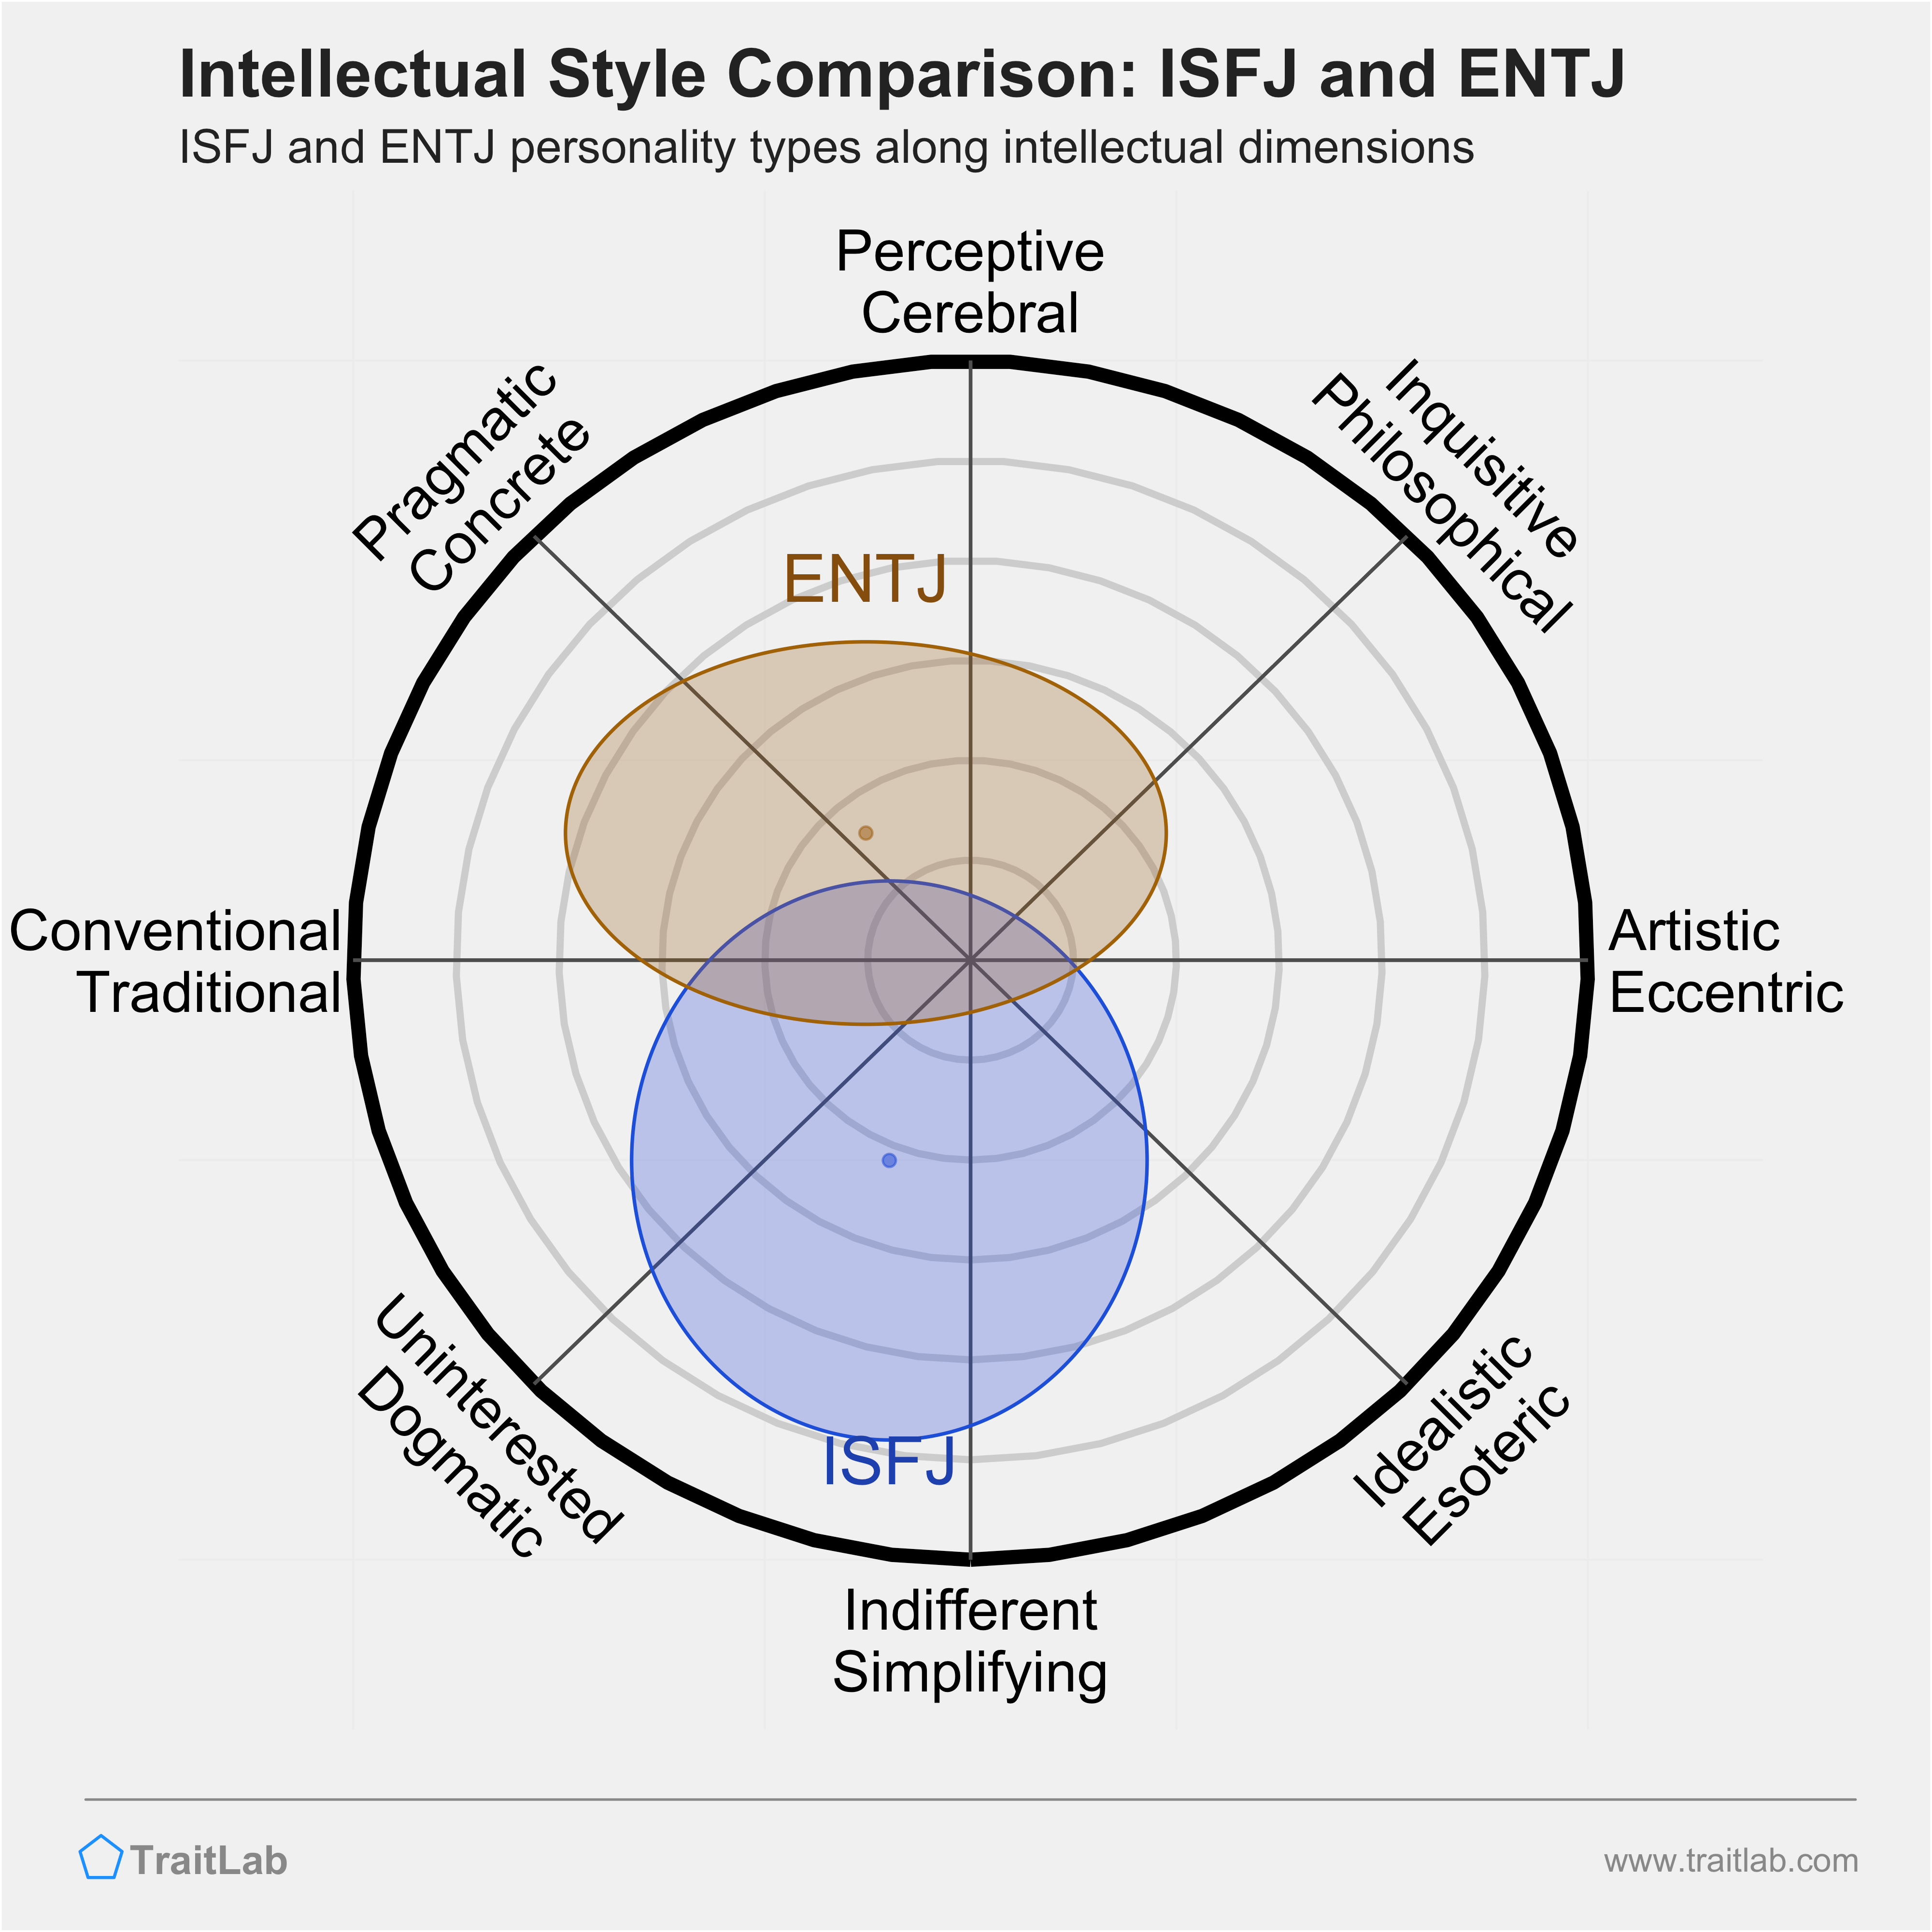 ISFJ and ENTJ comparison across intellectual dimensions